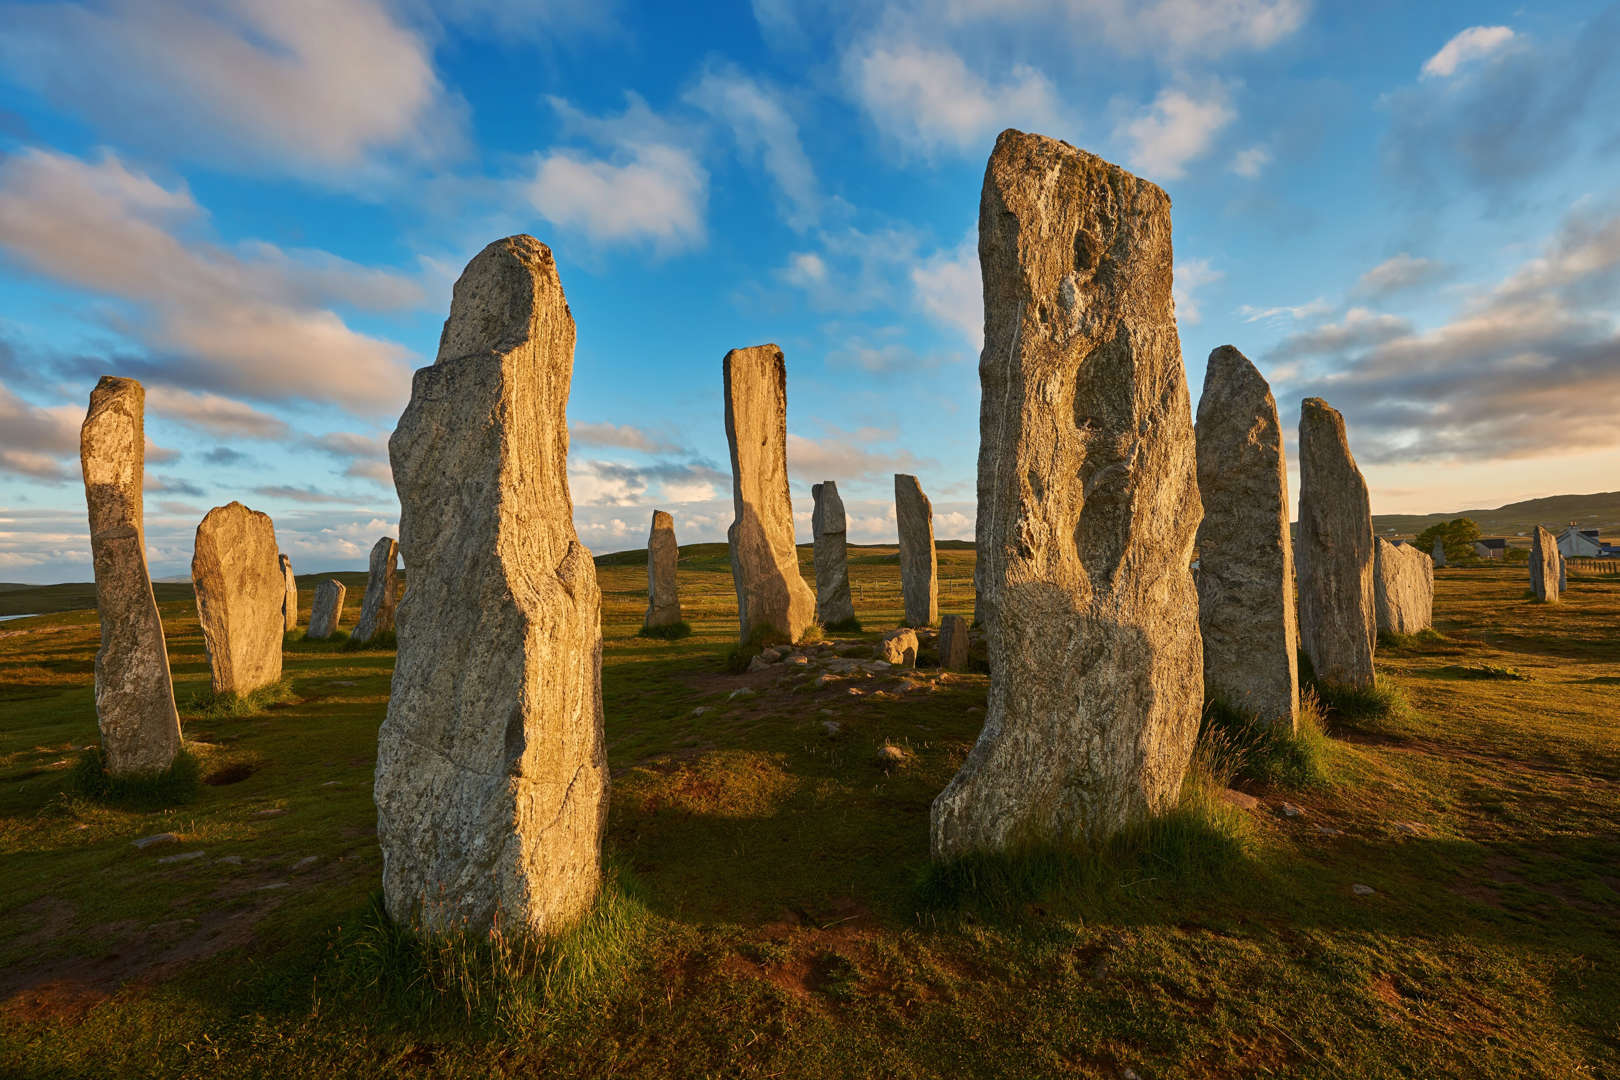 Standing stones. Менгиры Калланиша, Шотландия. Камни Калланиш остров Льюис Шотландия. Столбы Калланиш, остров Льюис Шотландия. Стоячие камни Калланиша, Шотландия.